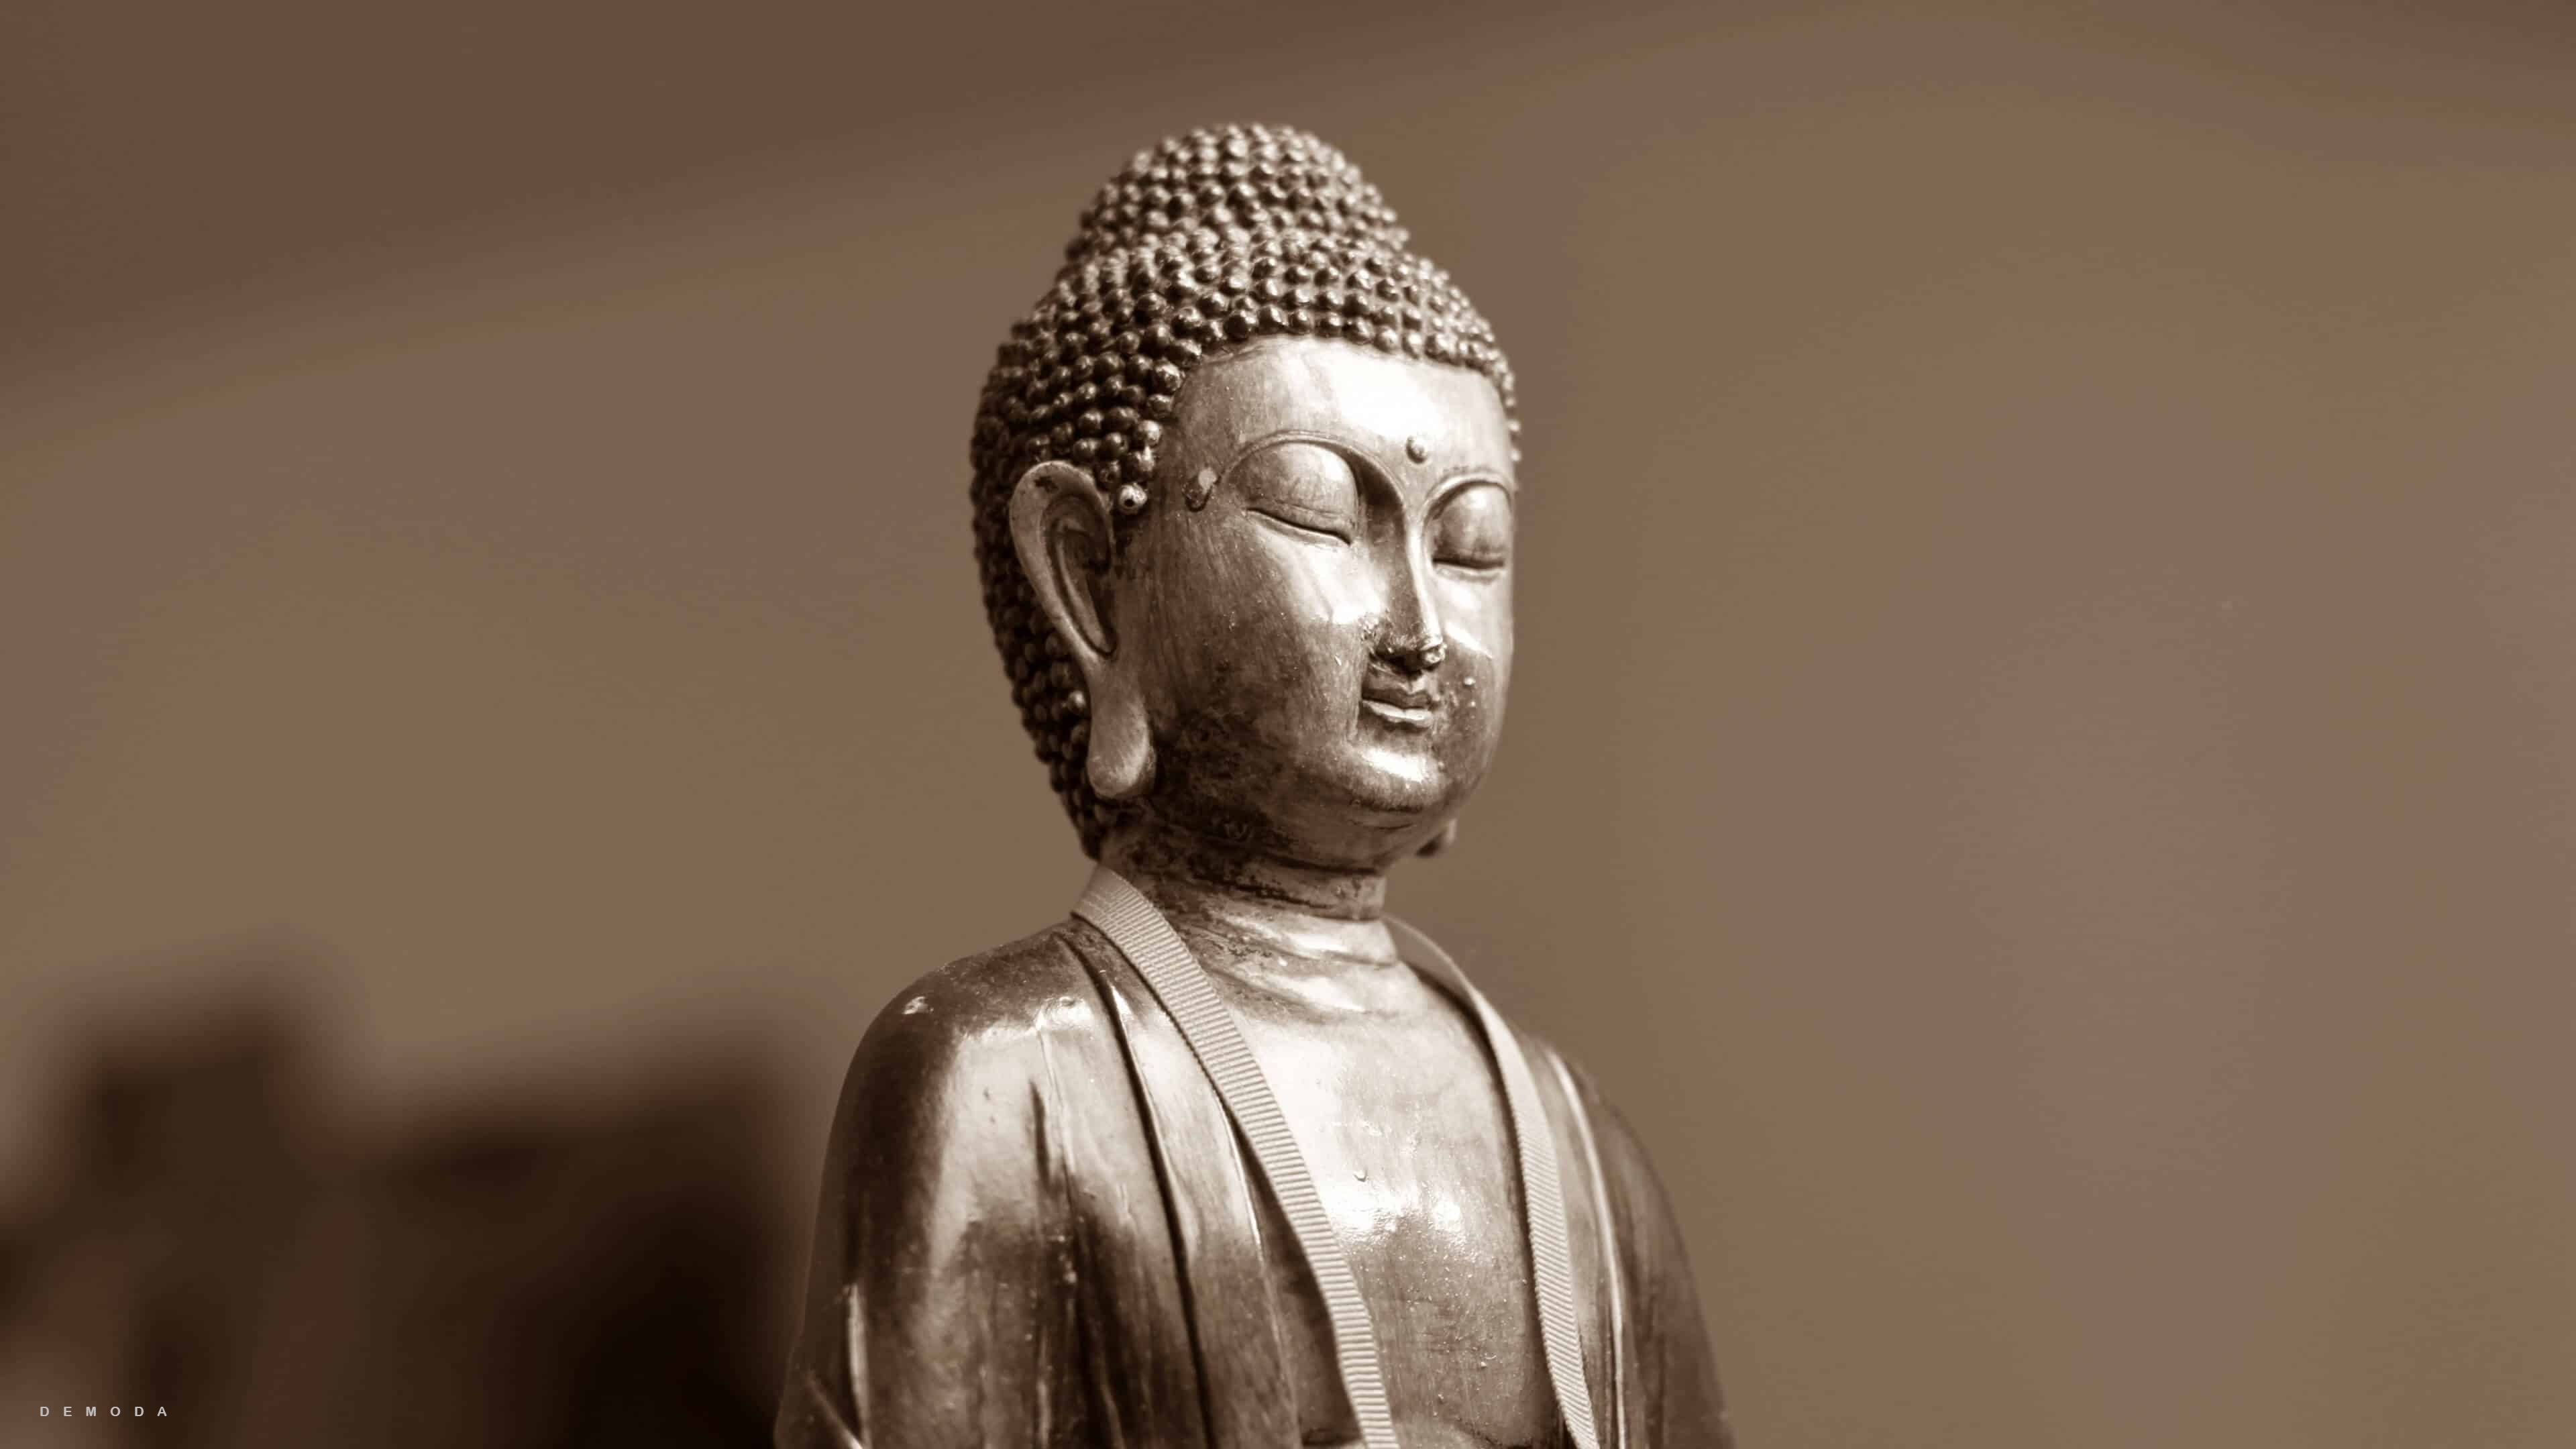 Ảnh Phật đẹp 3D sẽ khiến bạn cảm thấy thật bình an và yên tĩnh tại bất kỳ nơi nào. Hãy khám phá bộ sưu tập ảnh đa dạng và tìm kiếm những bức ảnh đẹp nhất để làm hình nền cho điện thoại hoặc máy tính của bạn.